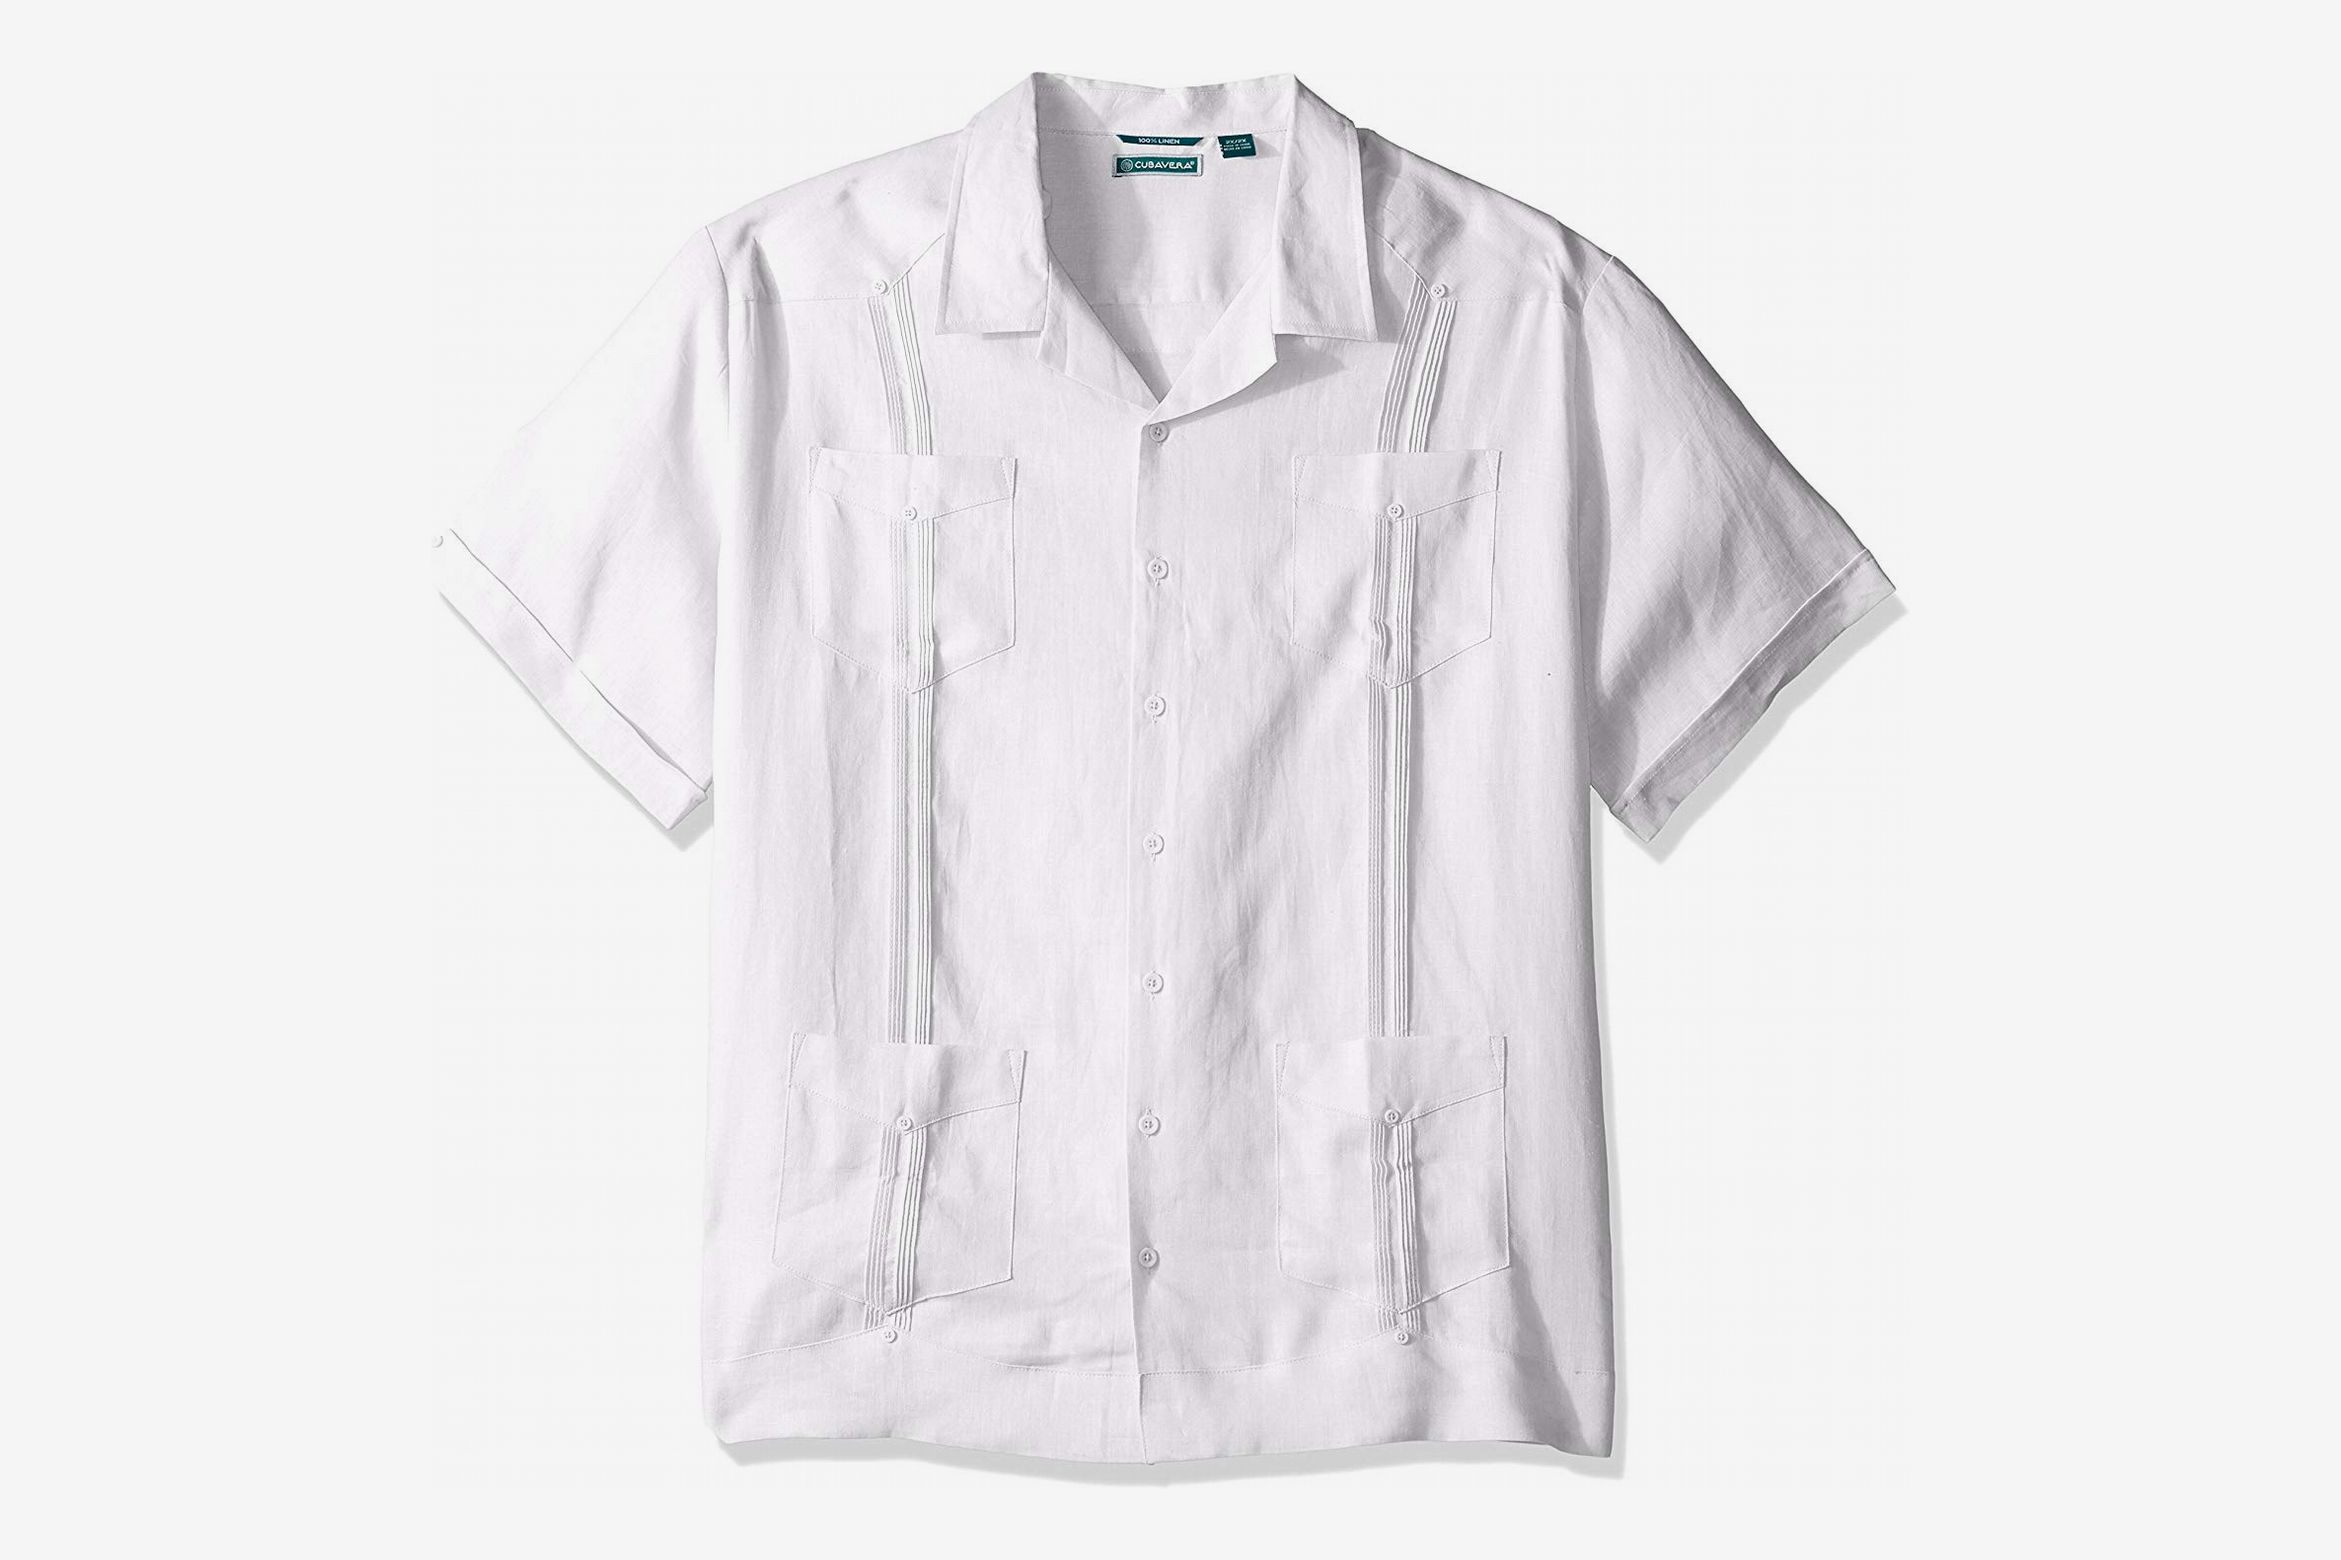 Xiloccer Men Striped Cotton Linen Long Sleeve Button T Shirt Blouse Fit Slim Top 